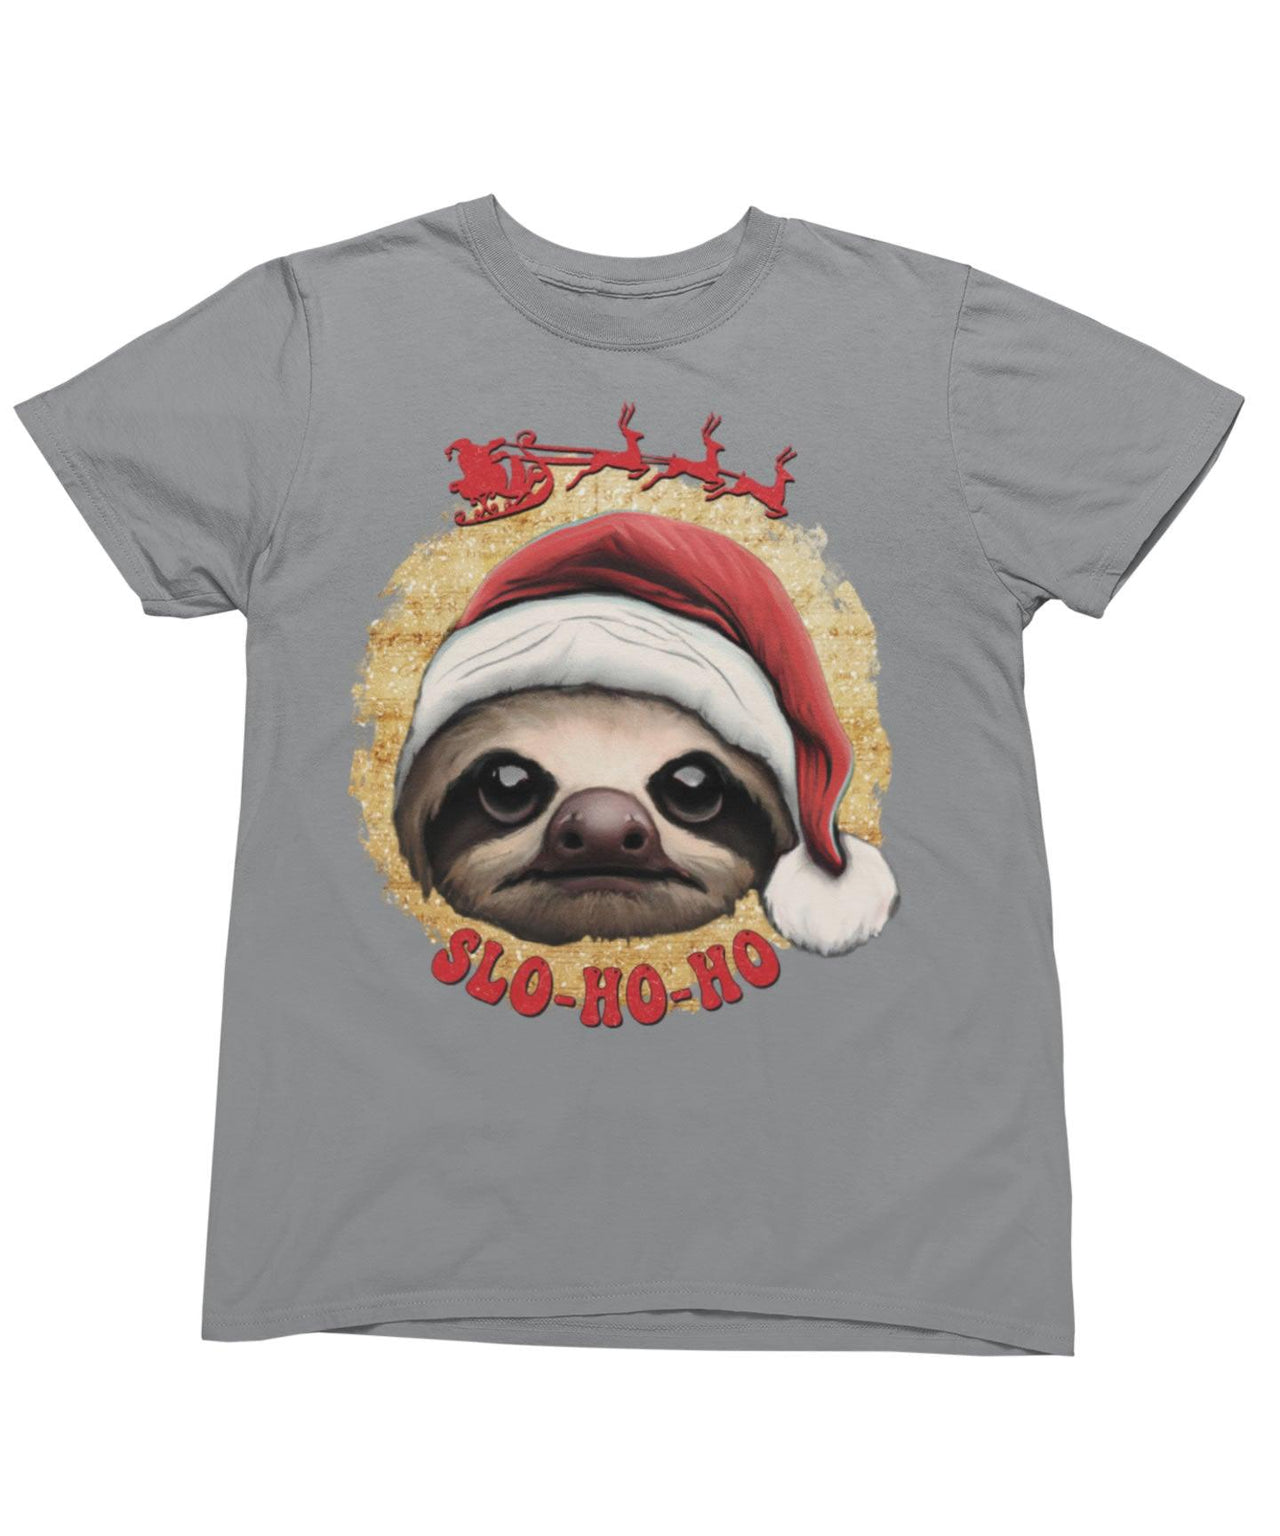 Sloth Ho Ho Ho Christmas Unisex Unisex T-Shirt 8Ball